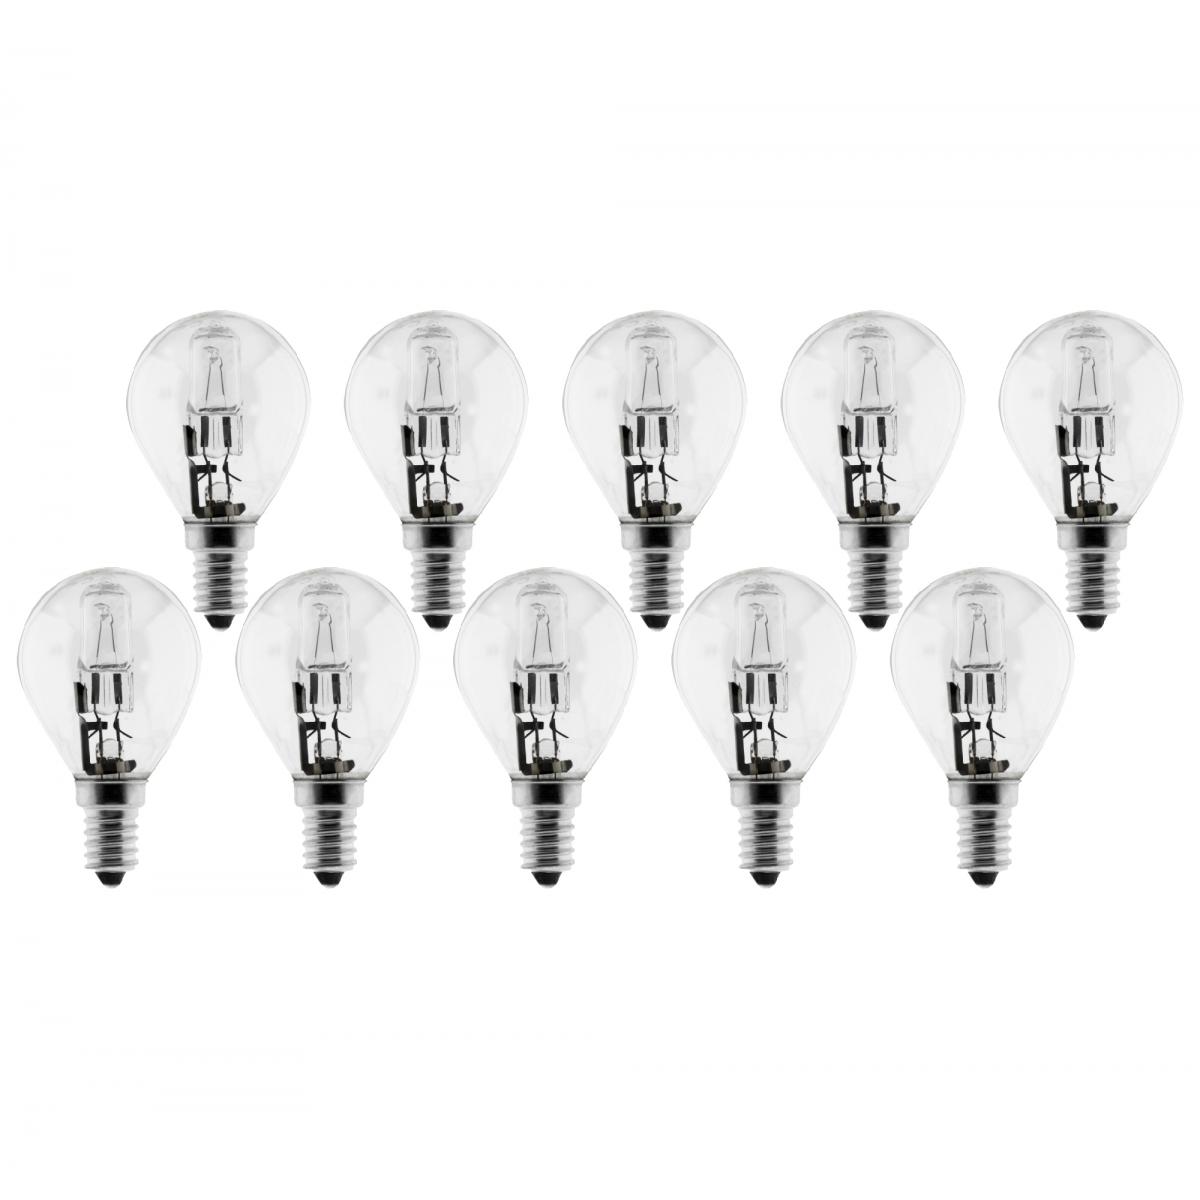 Elexity - Lot de 10 ampoules halogène 18W E14 sphériques - Ampoules LED